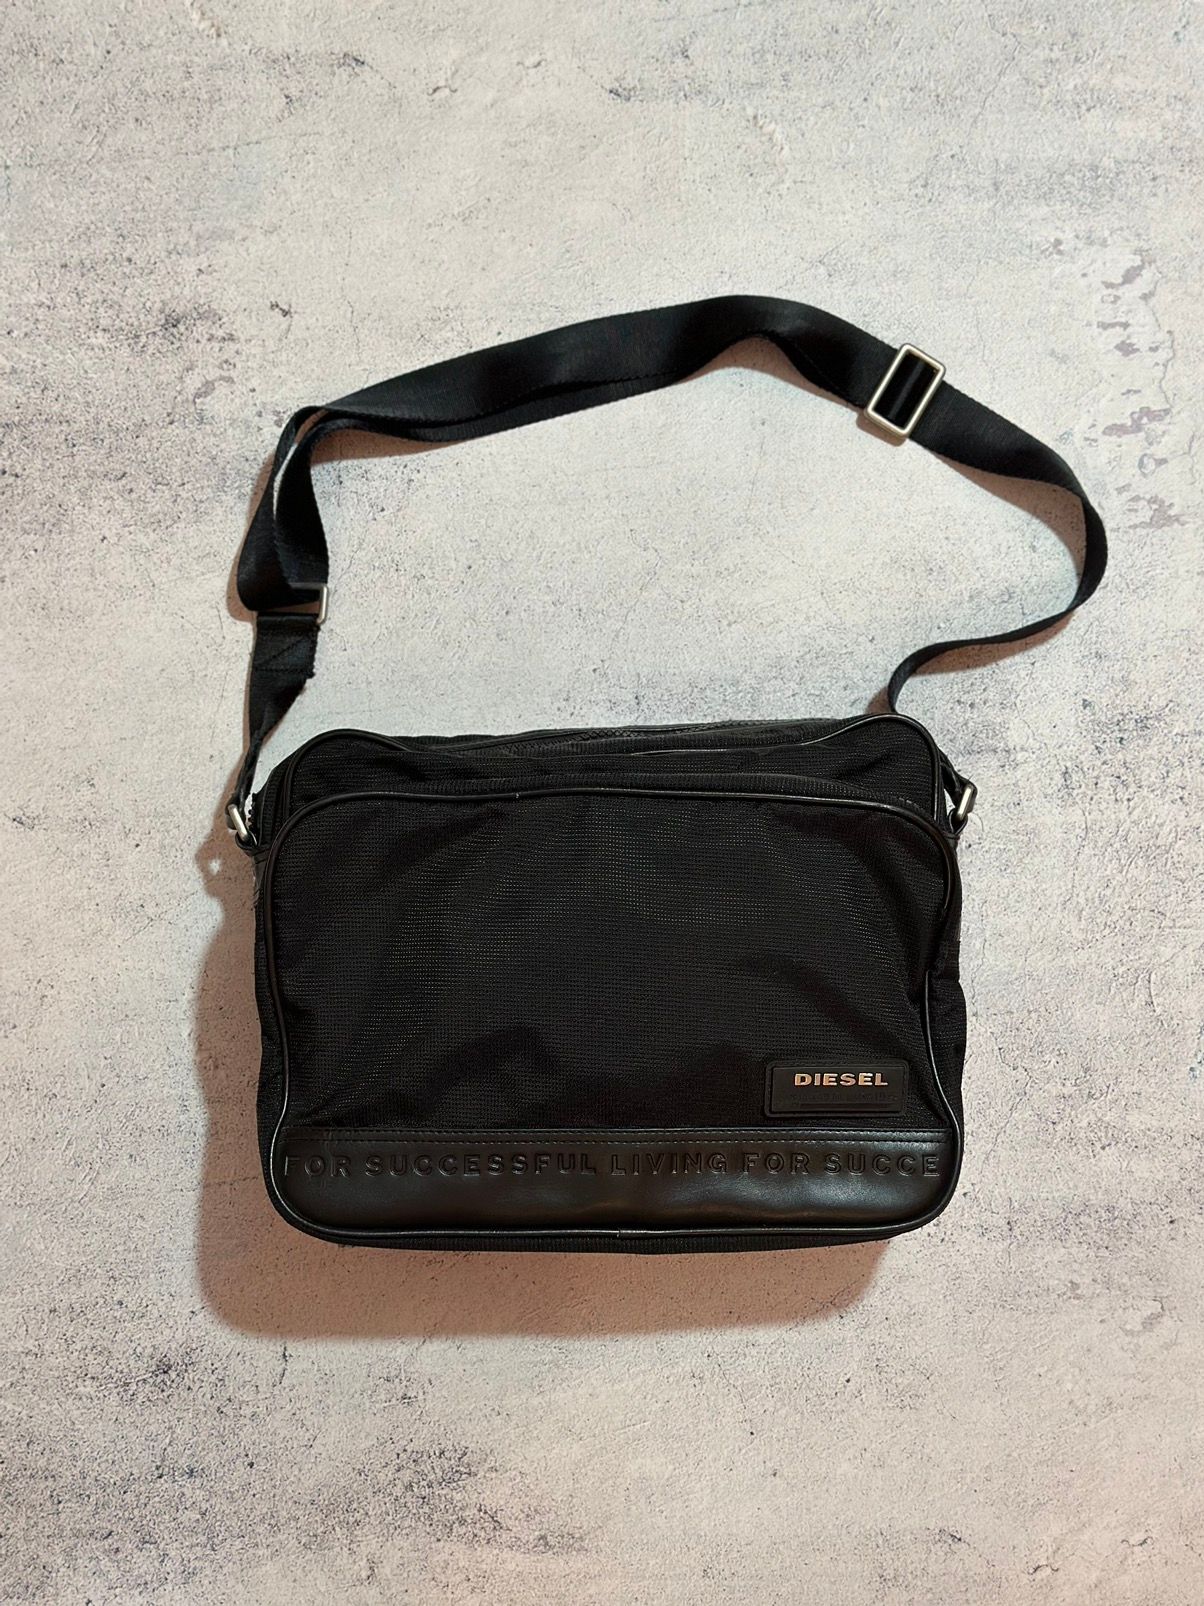 Pre-owned Avant Garde X Diesel Messenger Bag Crossbody In Black